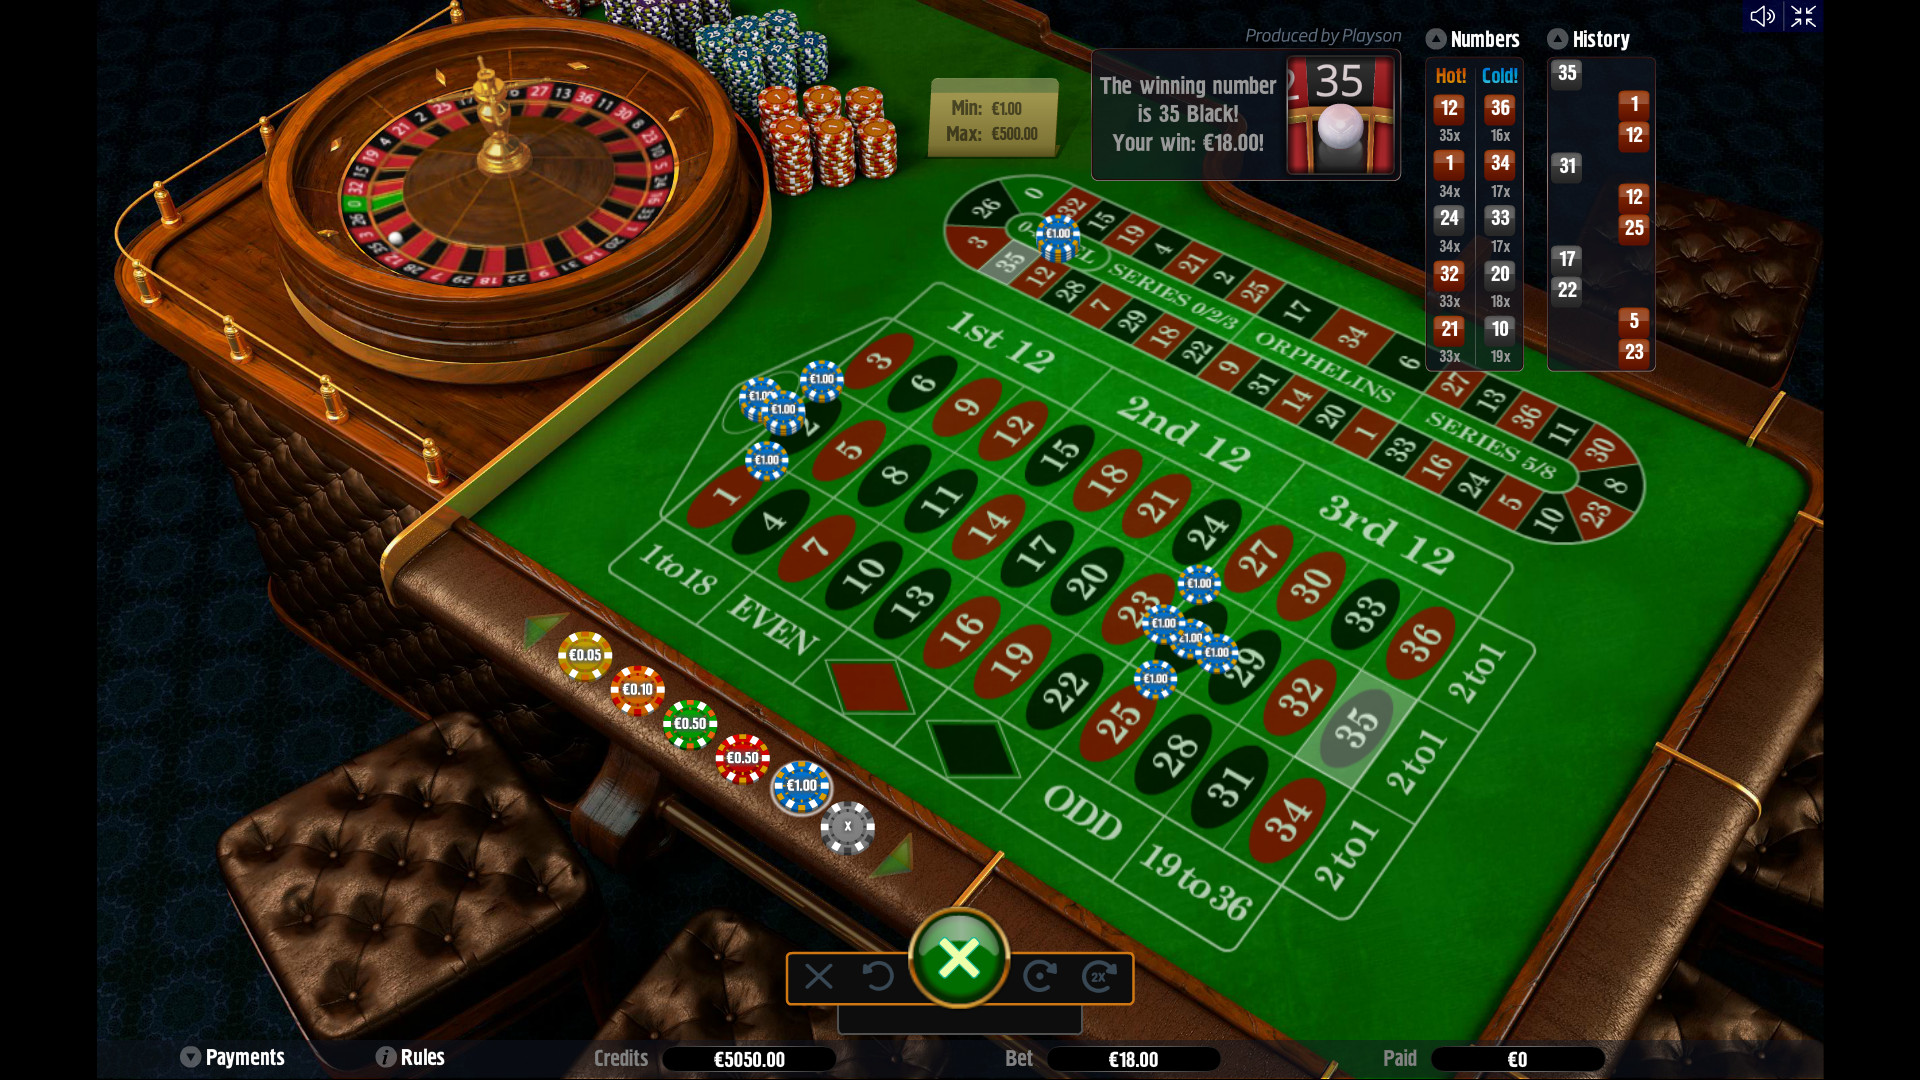 Казино как и в обычной рулетке в онлайн ее версии где есть живой дилер имеется топ казино онлайн на рубли officialcasino xyz